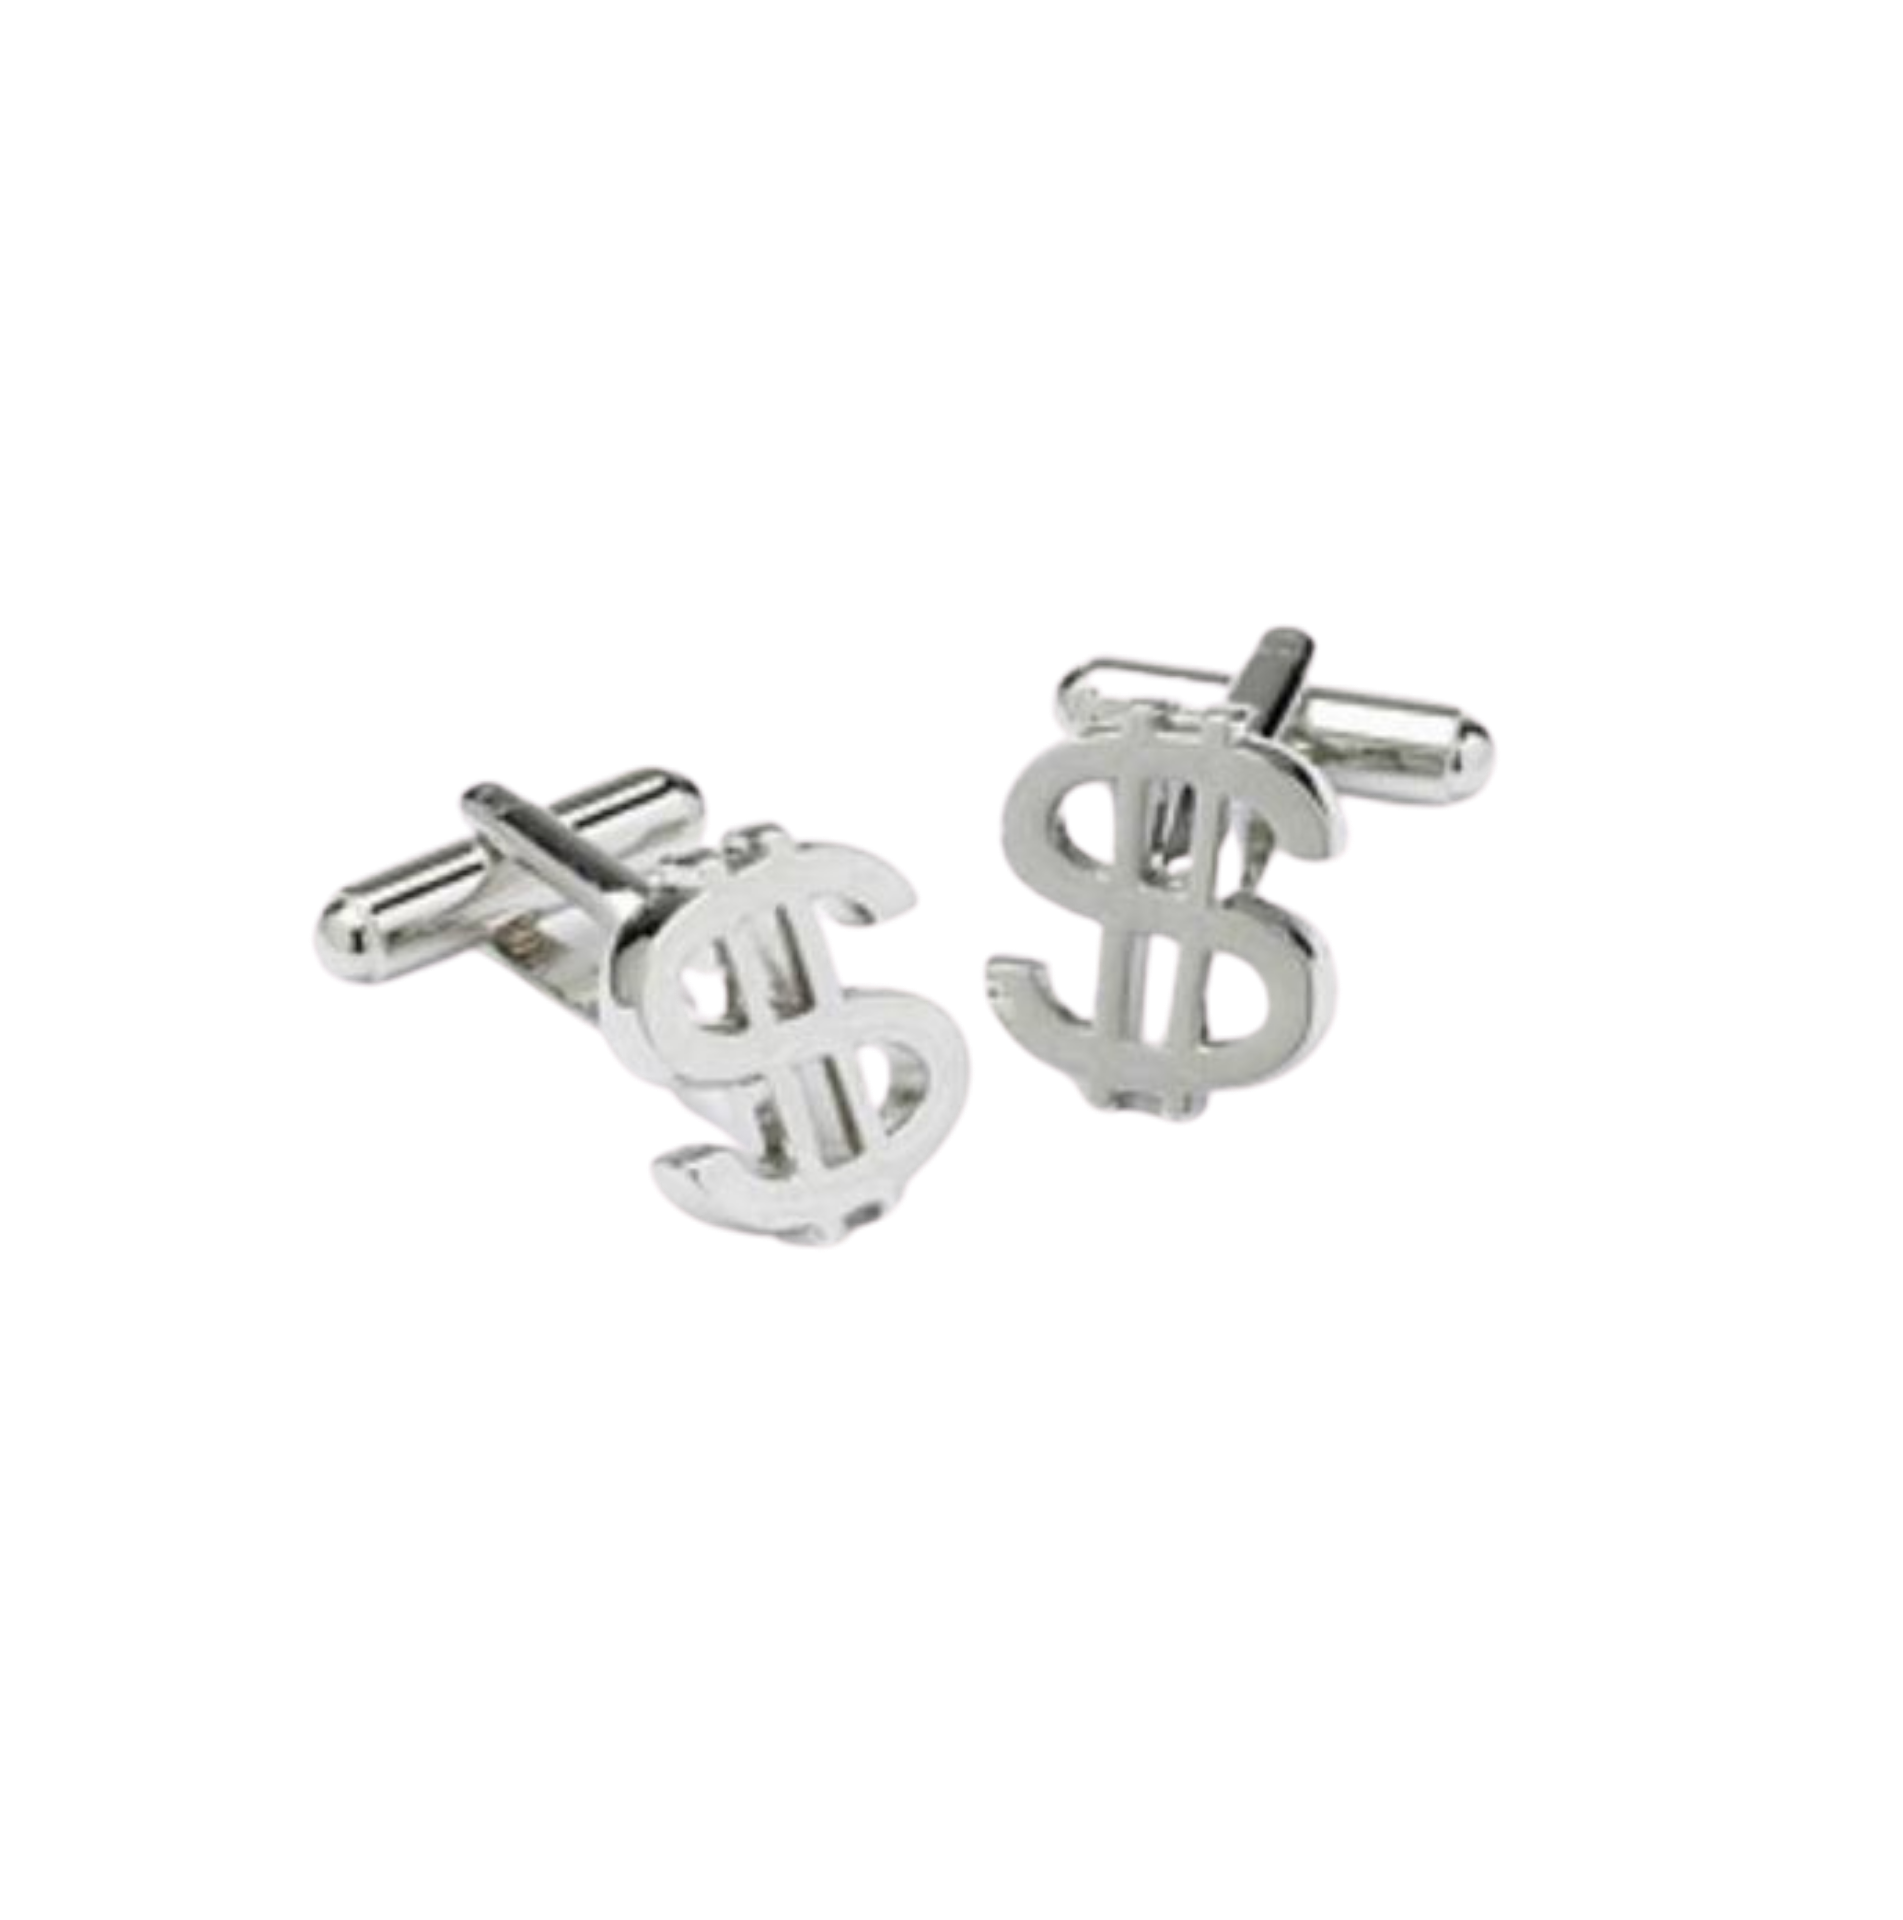 Onyx-Art Dollar Sign Cufflinks - - Untitleddesign-2020-11-21T140200.812